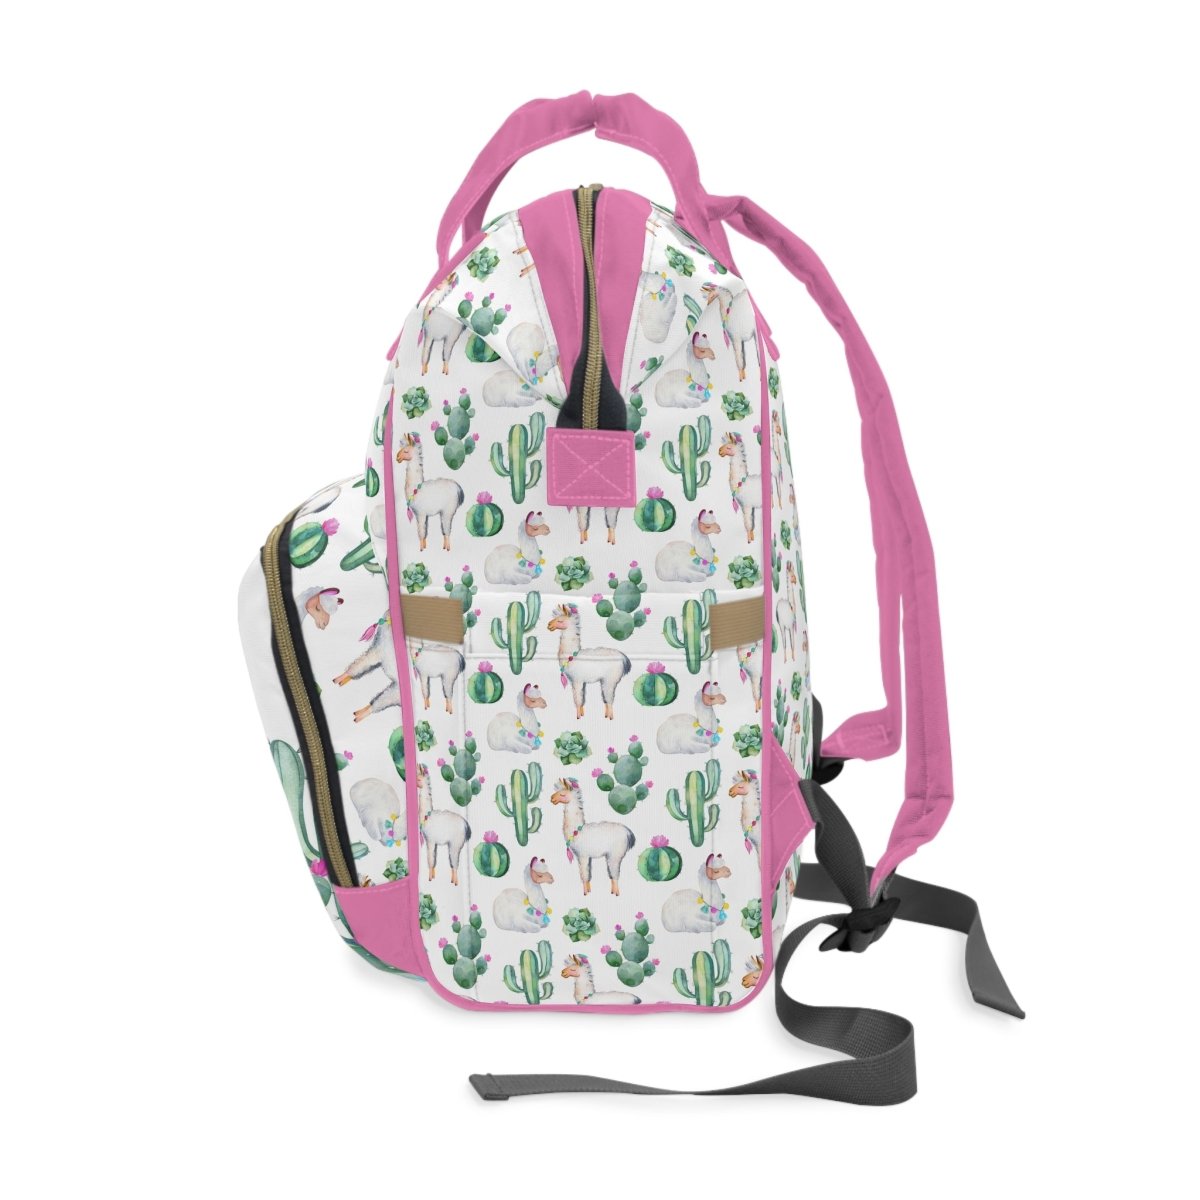 Llama Love Personalized Backpack Diaper Bag - gender_girl, Llama Love, text